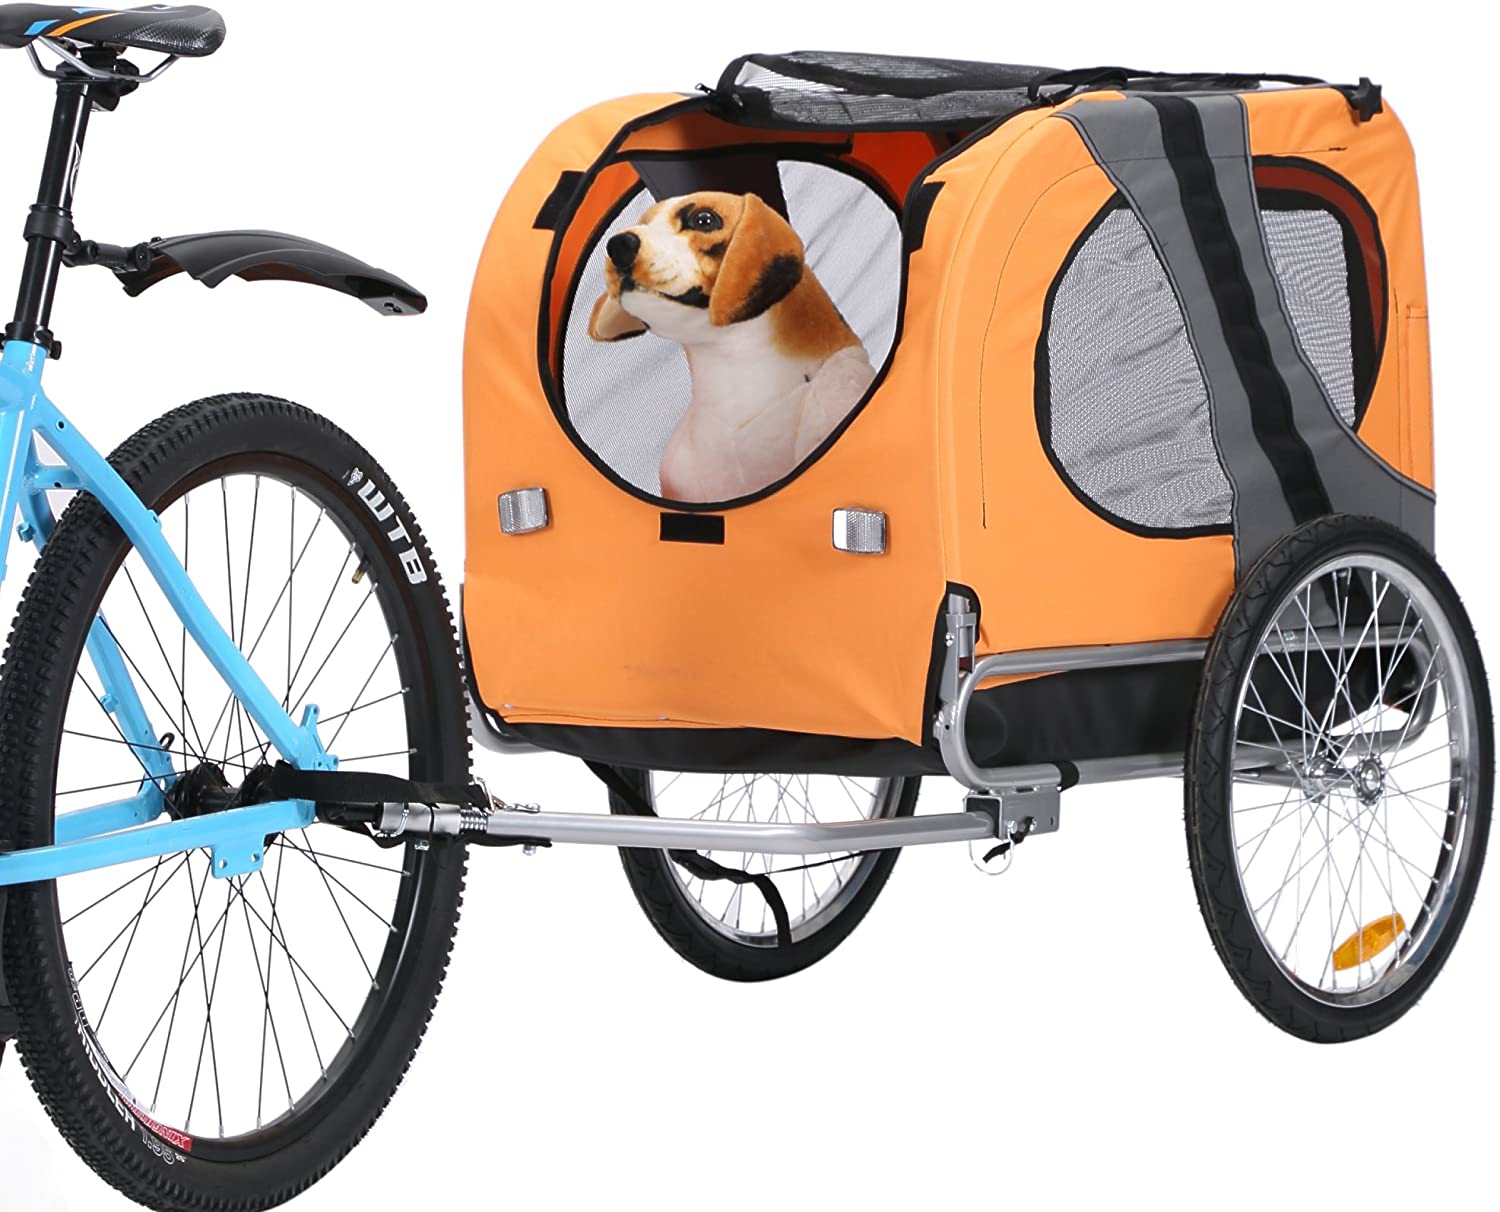  Leonpets mascotas Remolque de bicicleta Perros Carro Transporter con acoplamiento universal naranja nuevo 10117 